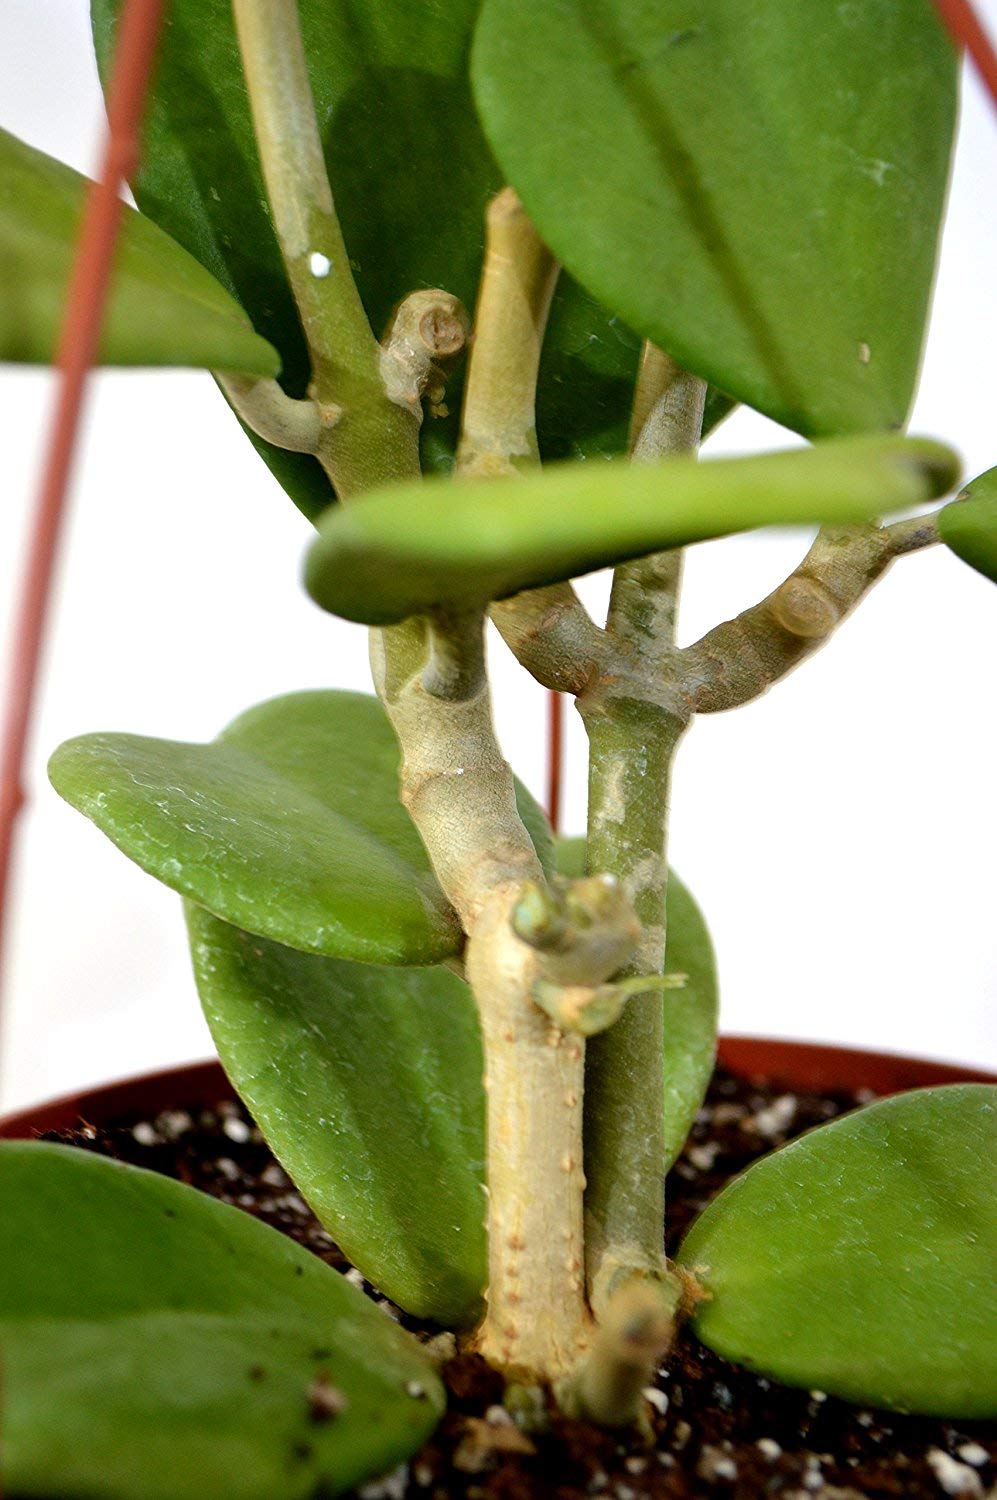 Green Hoya Kerrii Heart Shaped 6&quot; hanging pot indoor/outdoor Love Plant